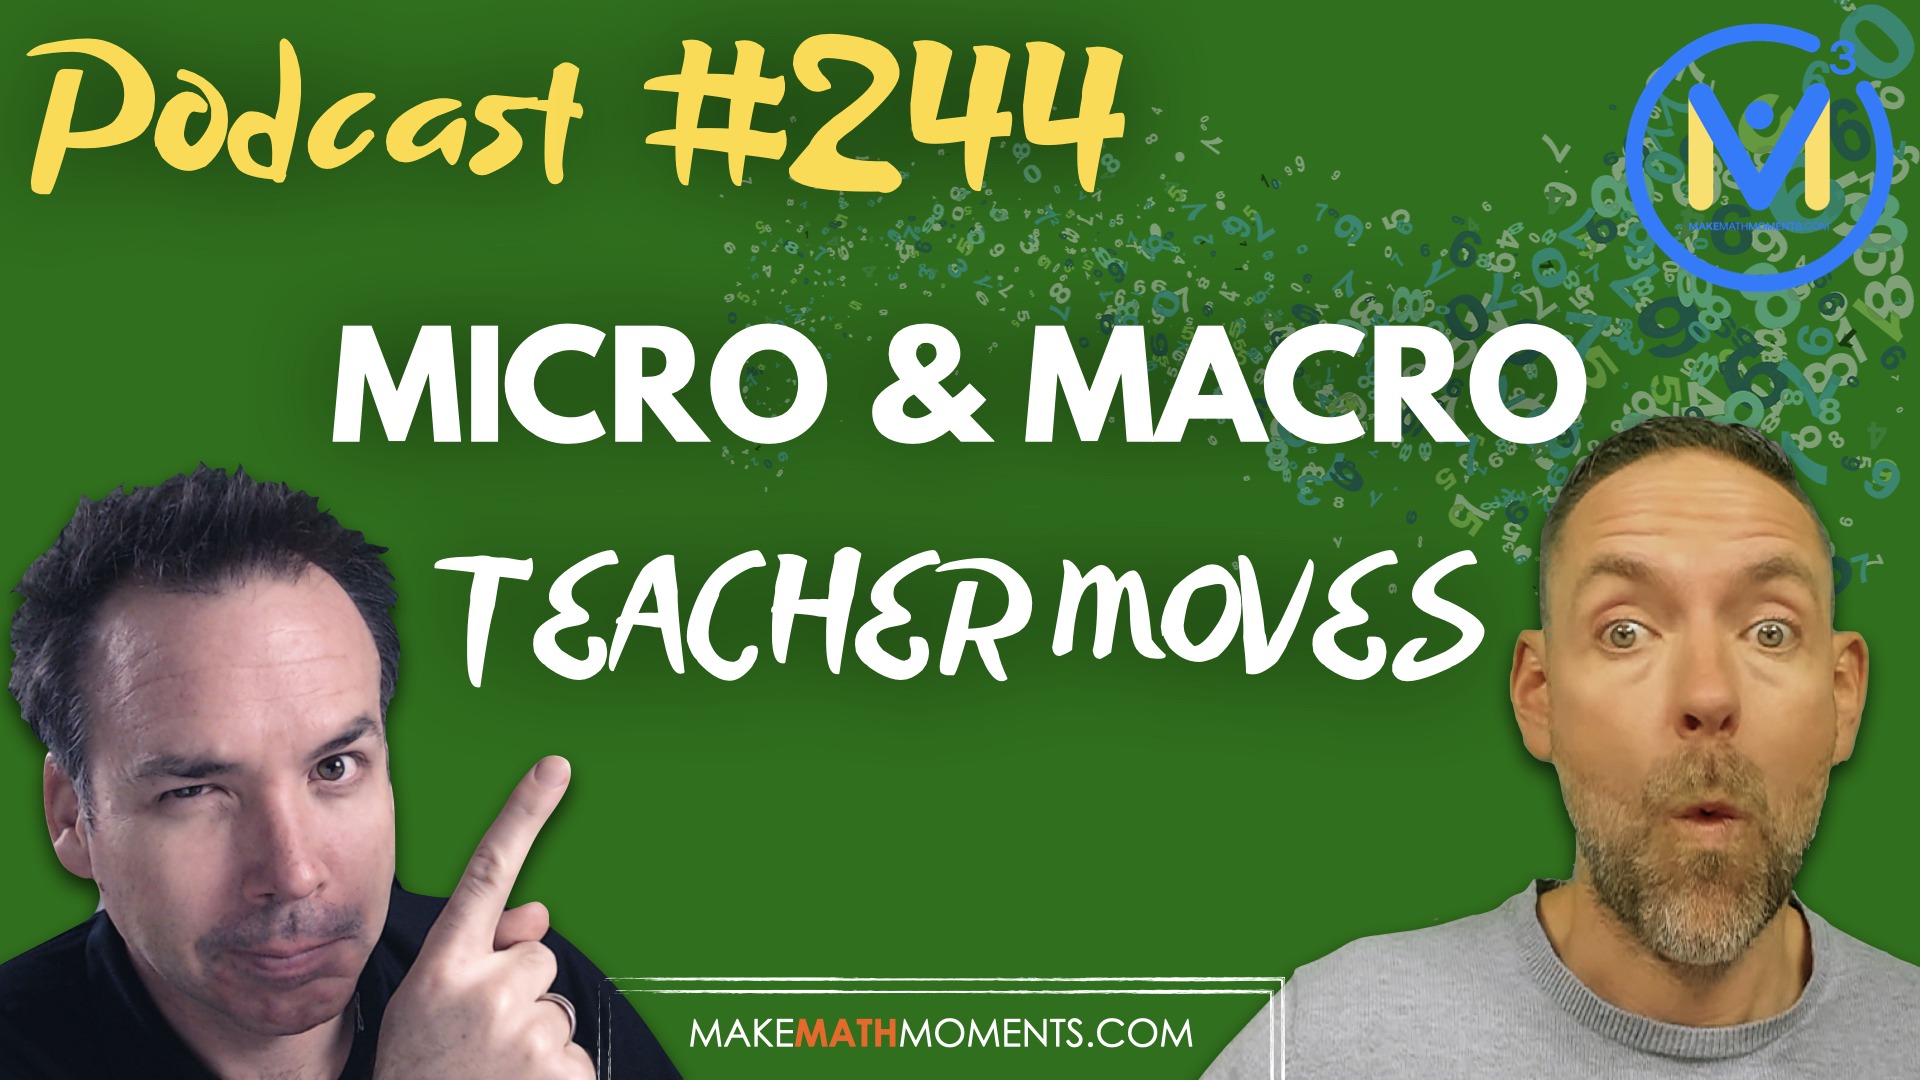 Episode #244: Micro & Macro Teacher Moves – A Math Mentoring Moment